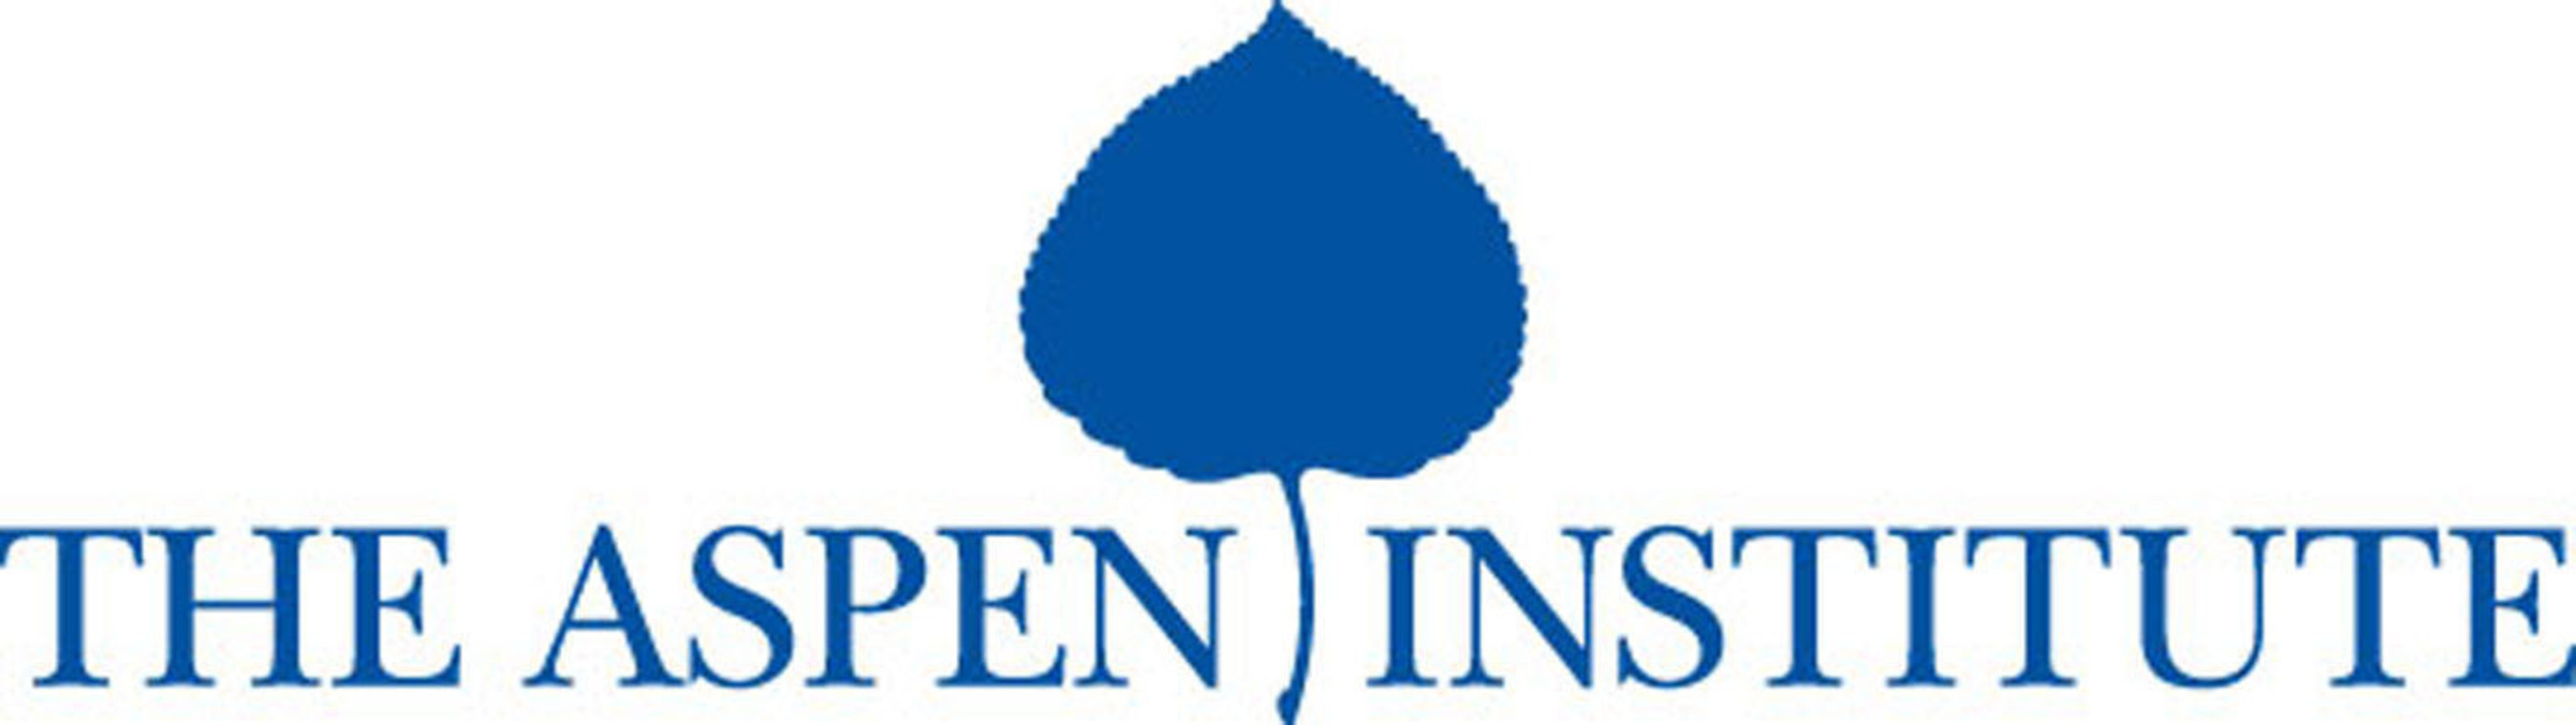 Aspen Institute logo.